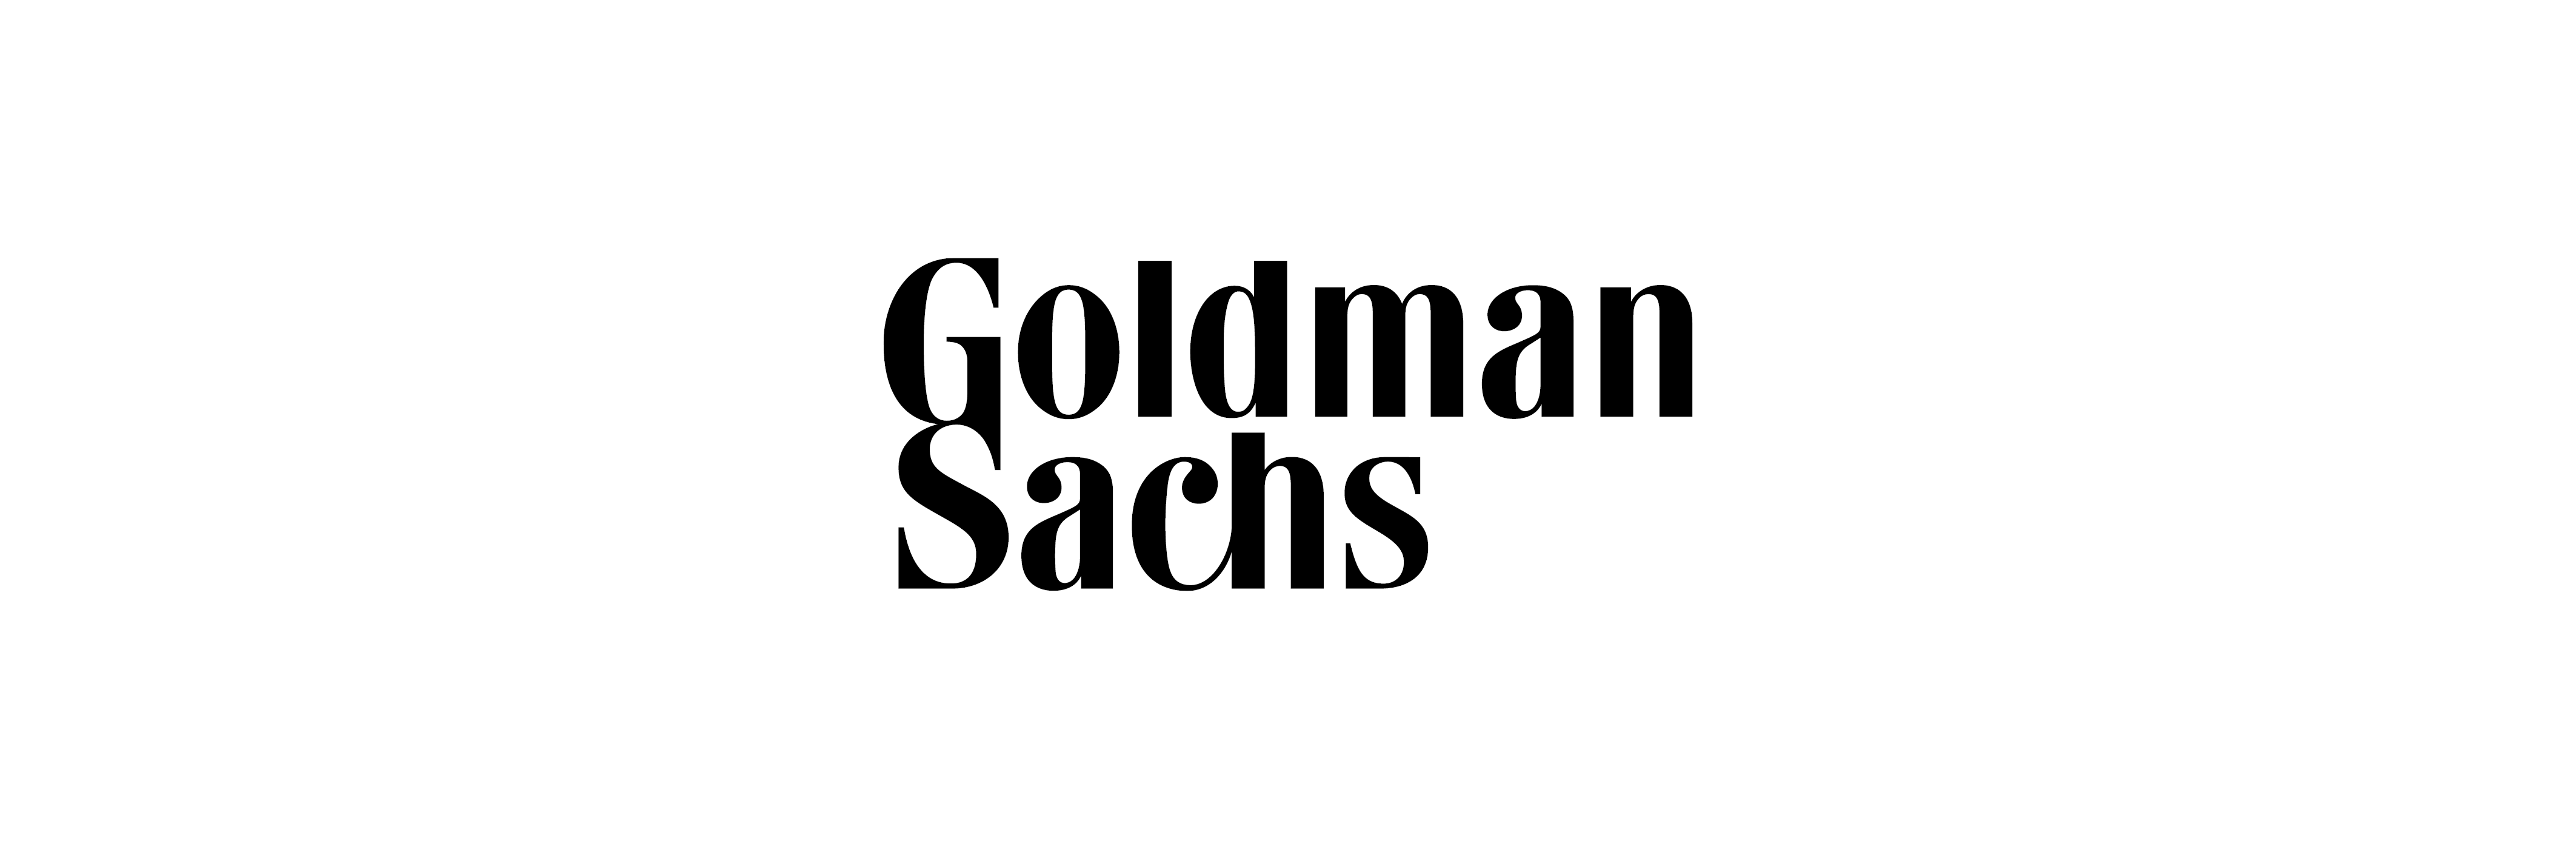 Goldman Sachs Australia Australia's LGBTQ Inclusive Employers